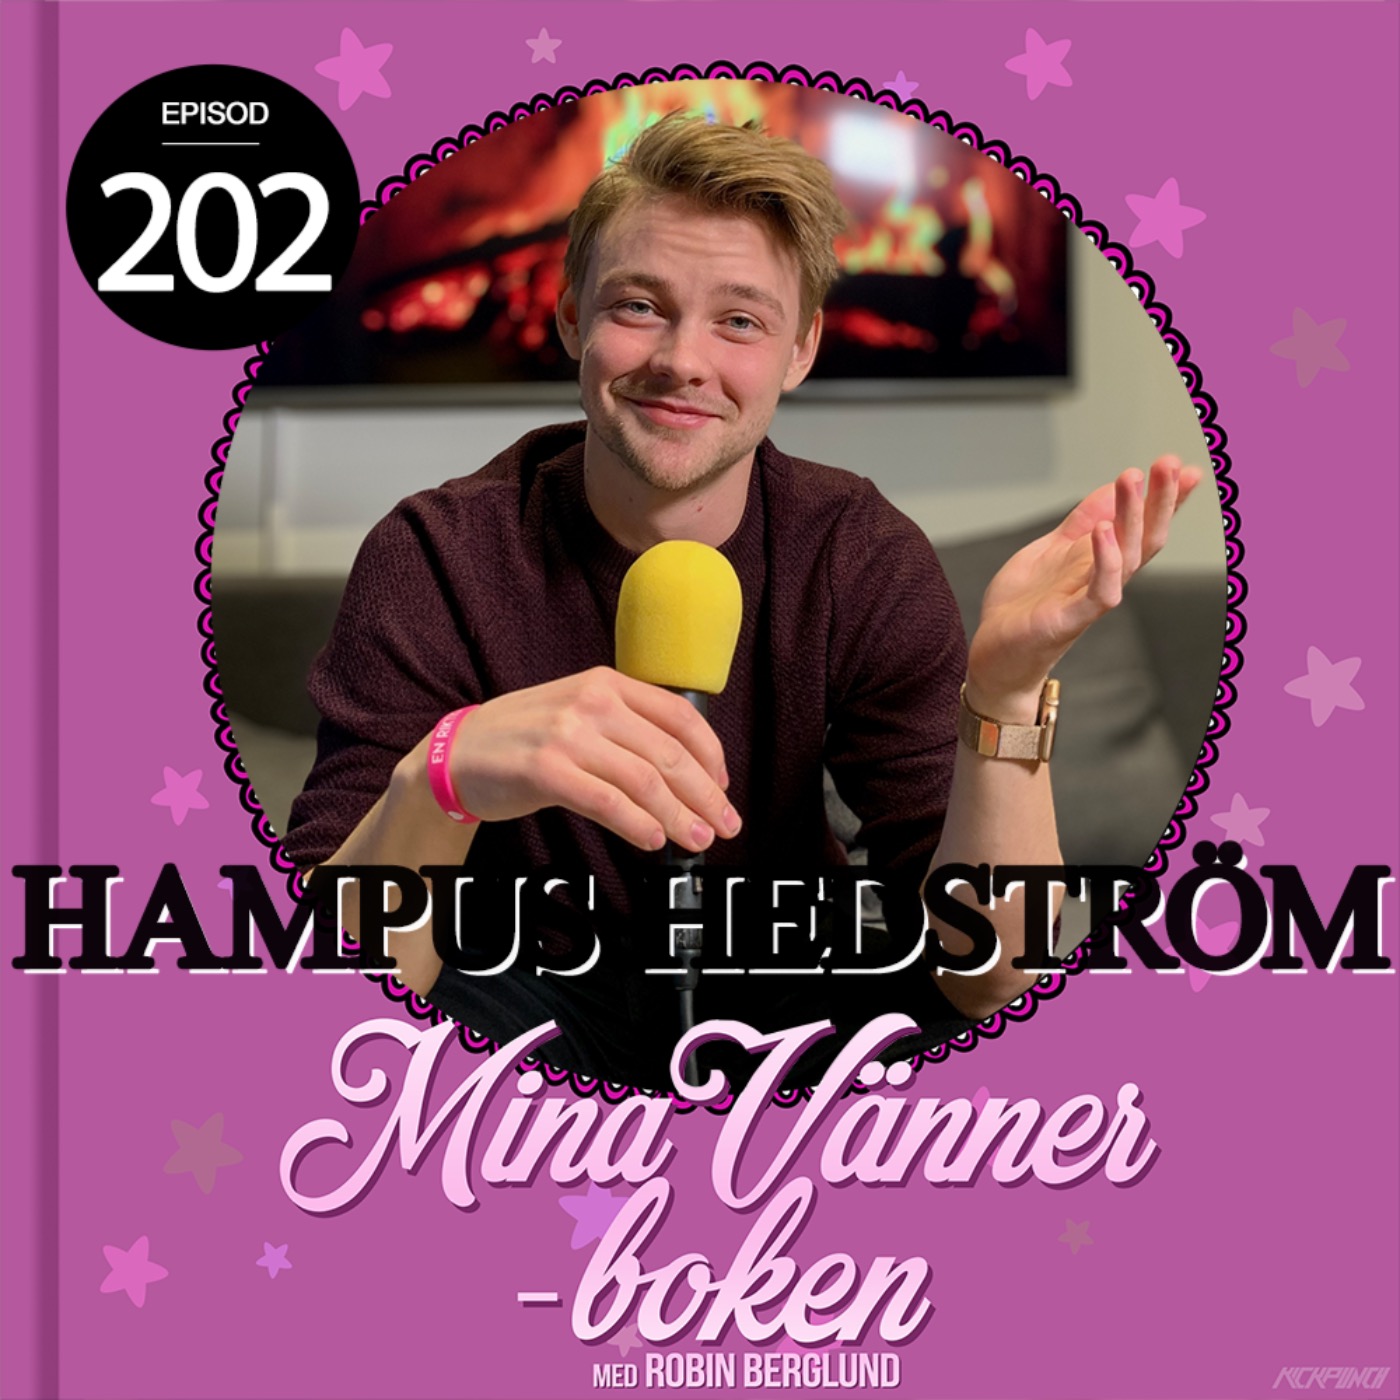 Hampus Hedström